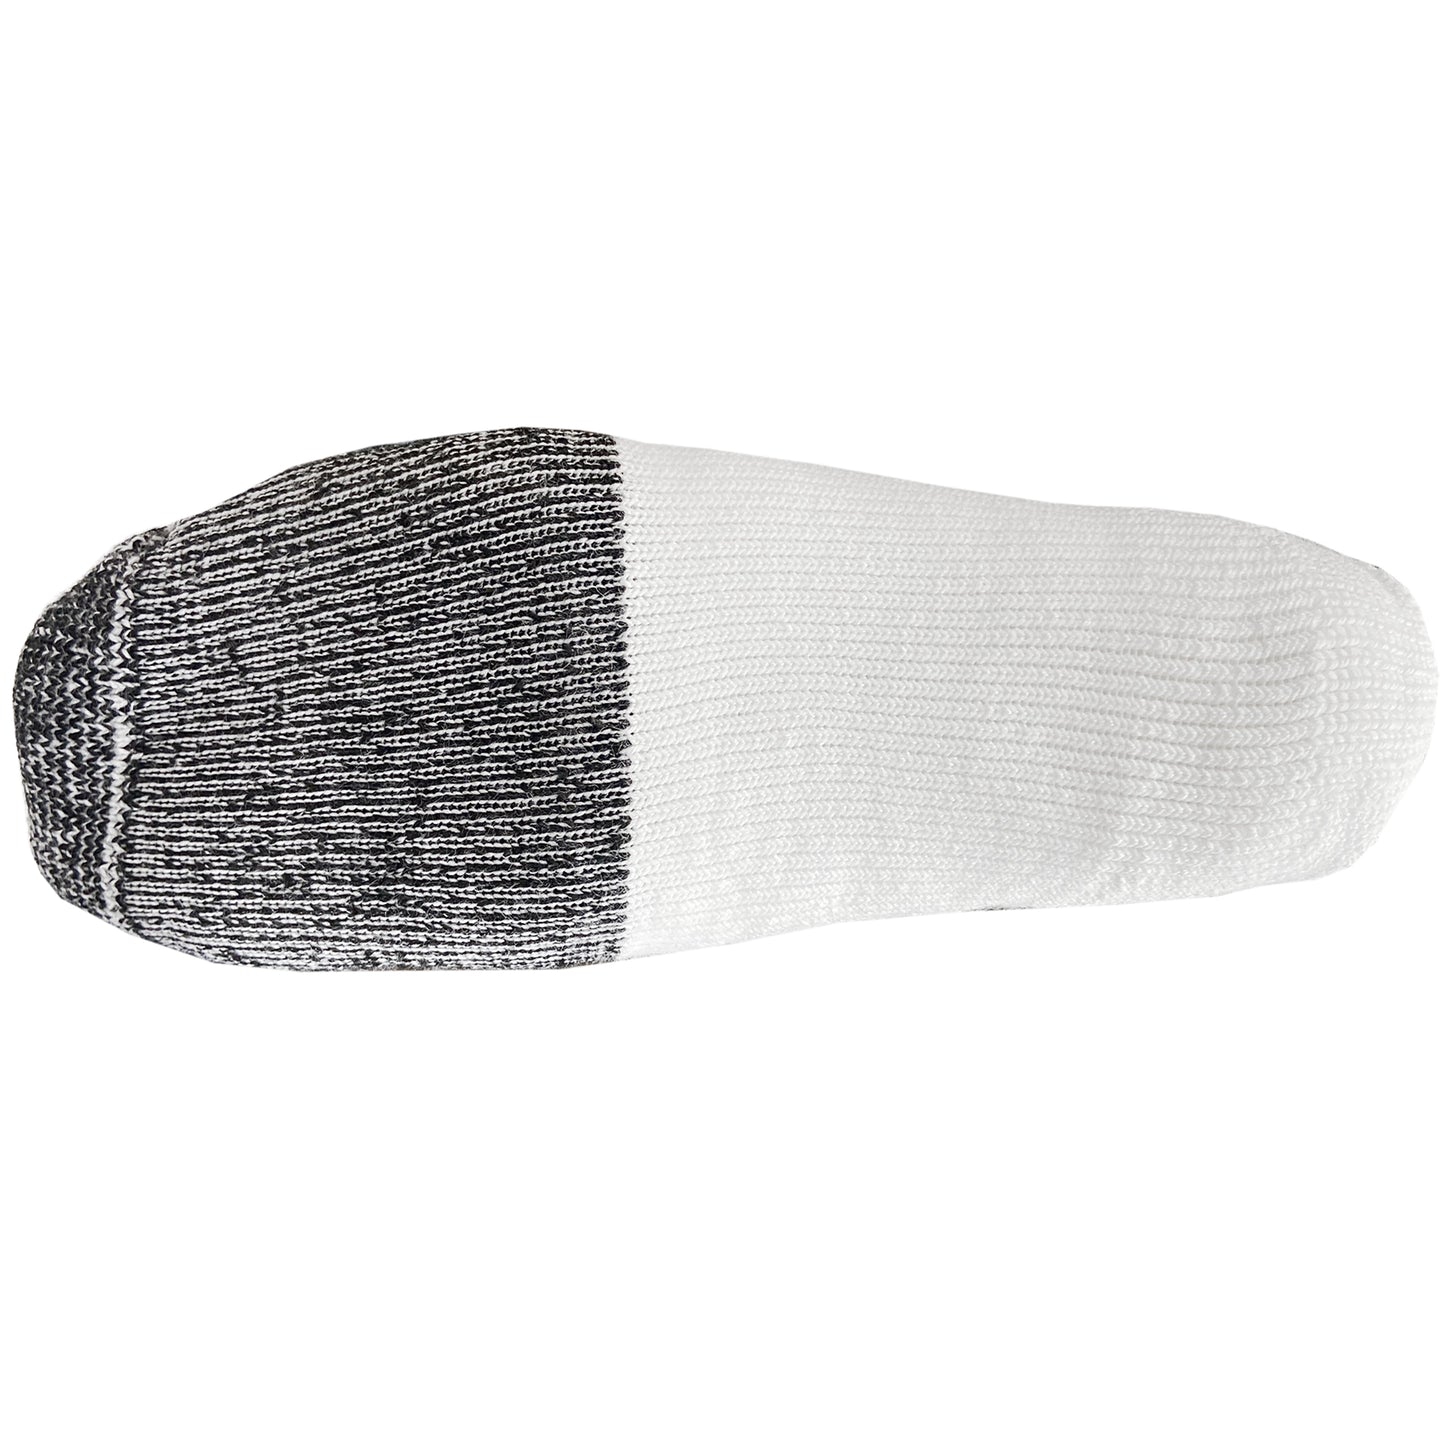 Thorlo Maximum Cushion Crew Socks (TX15004)